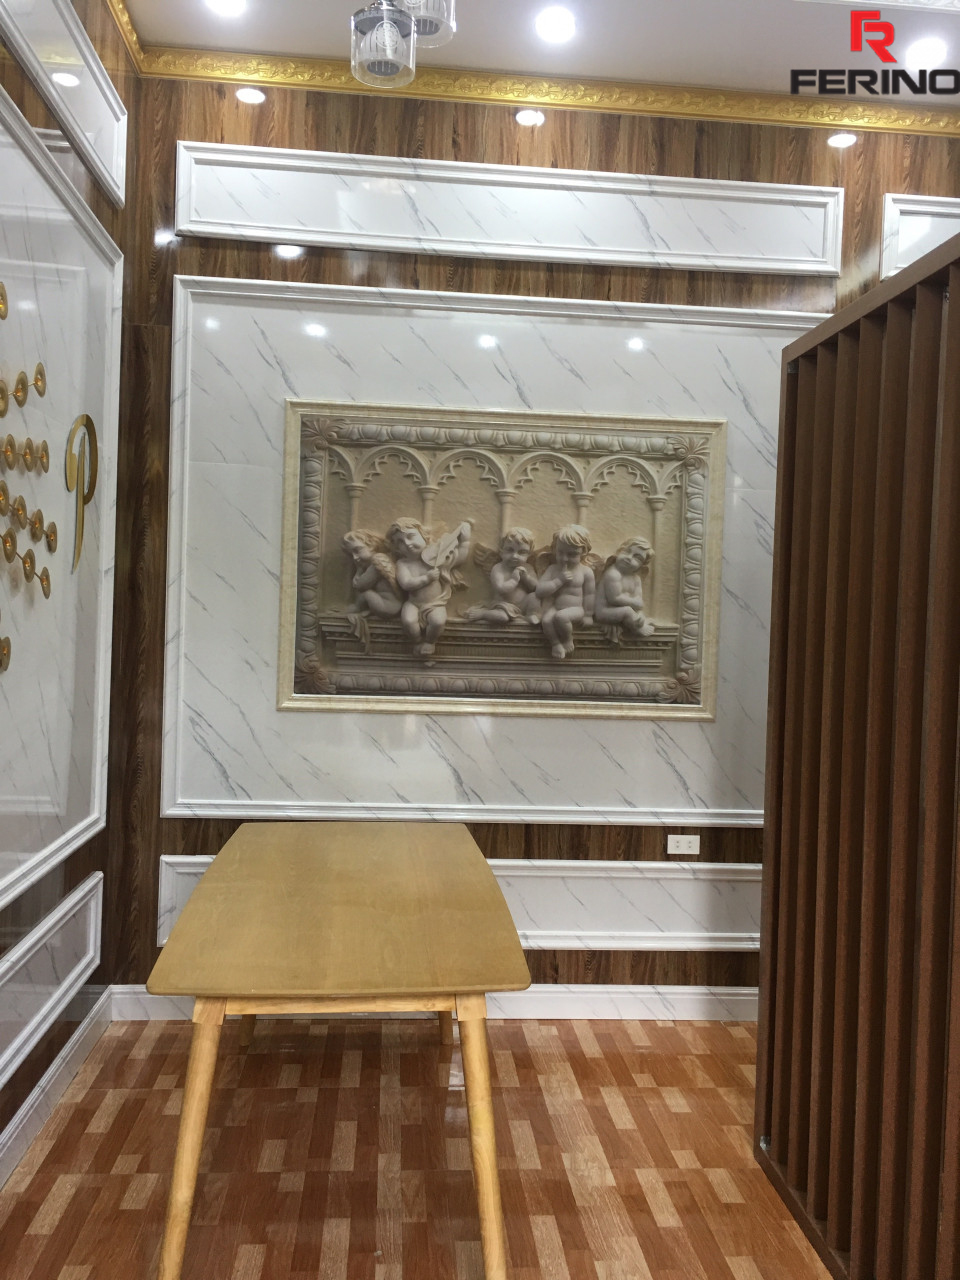 Ferino hoàn thiện công trình nhà anh Hùng tại Kim Ngưu - Hà Nội